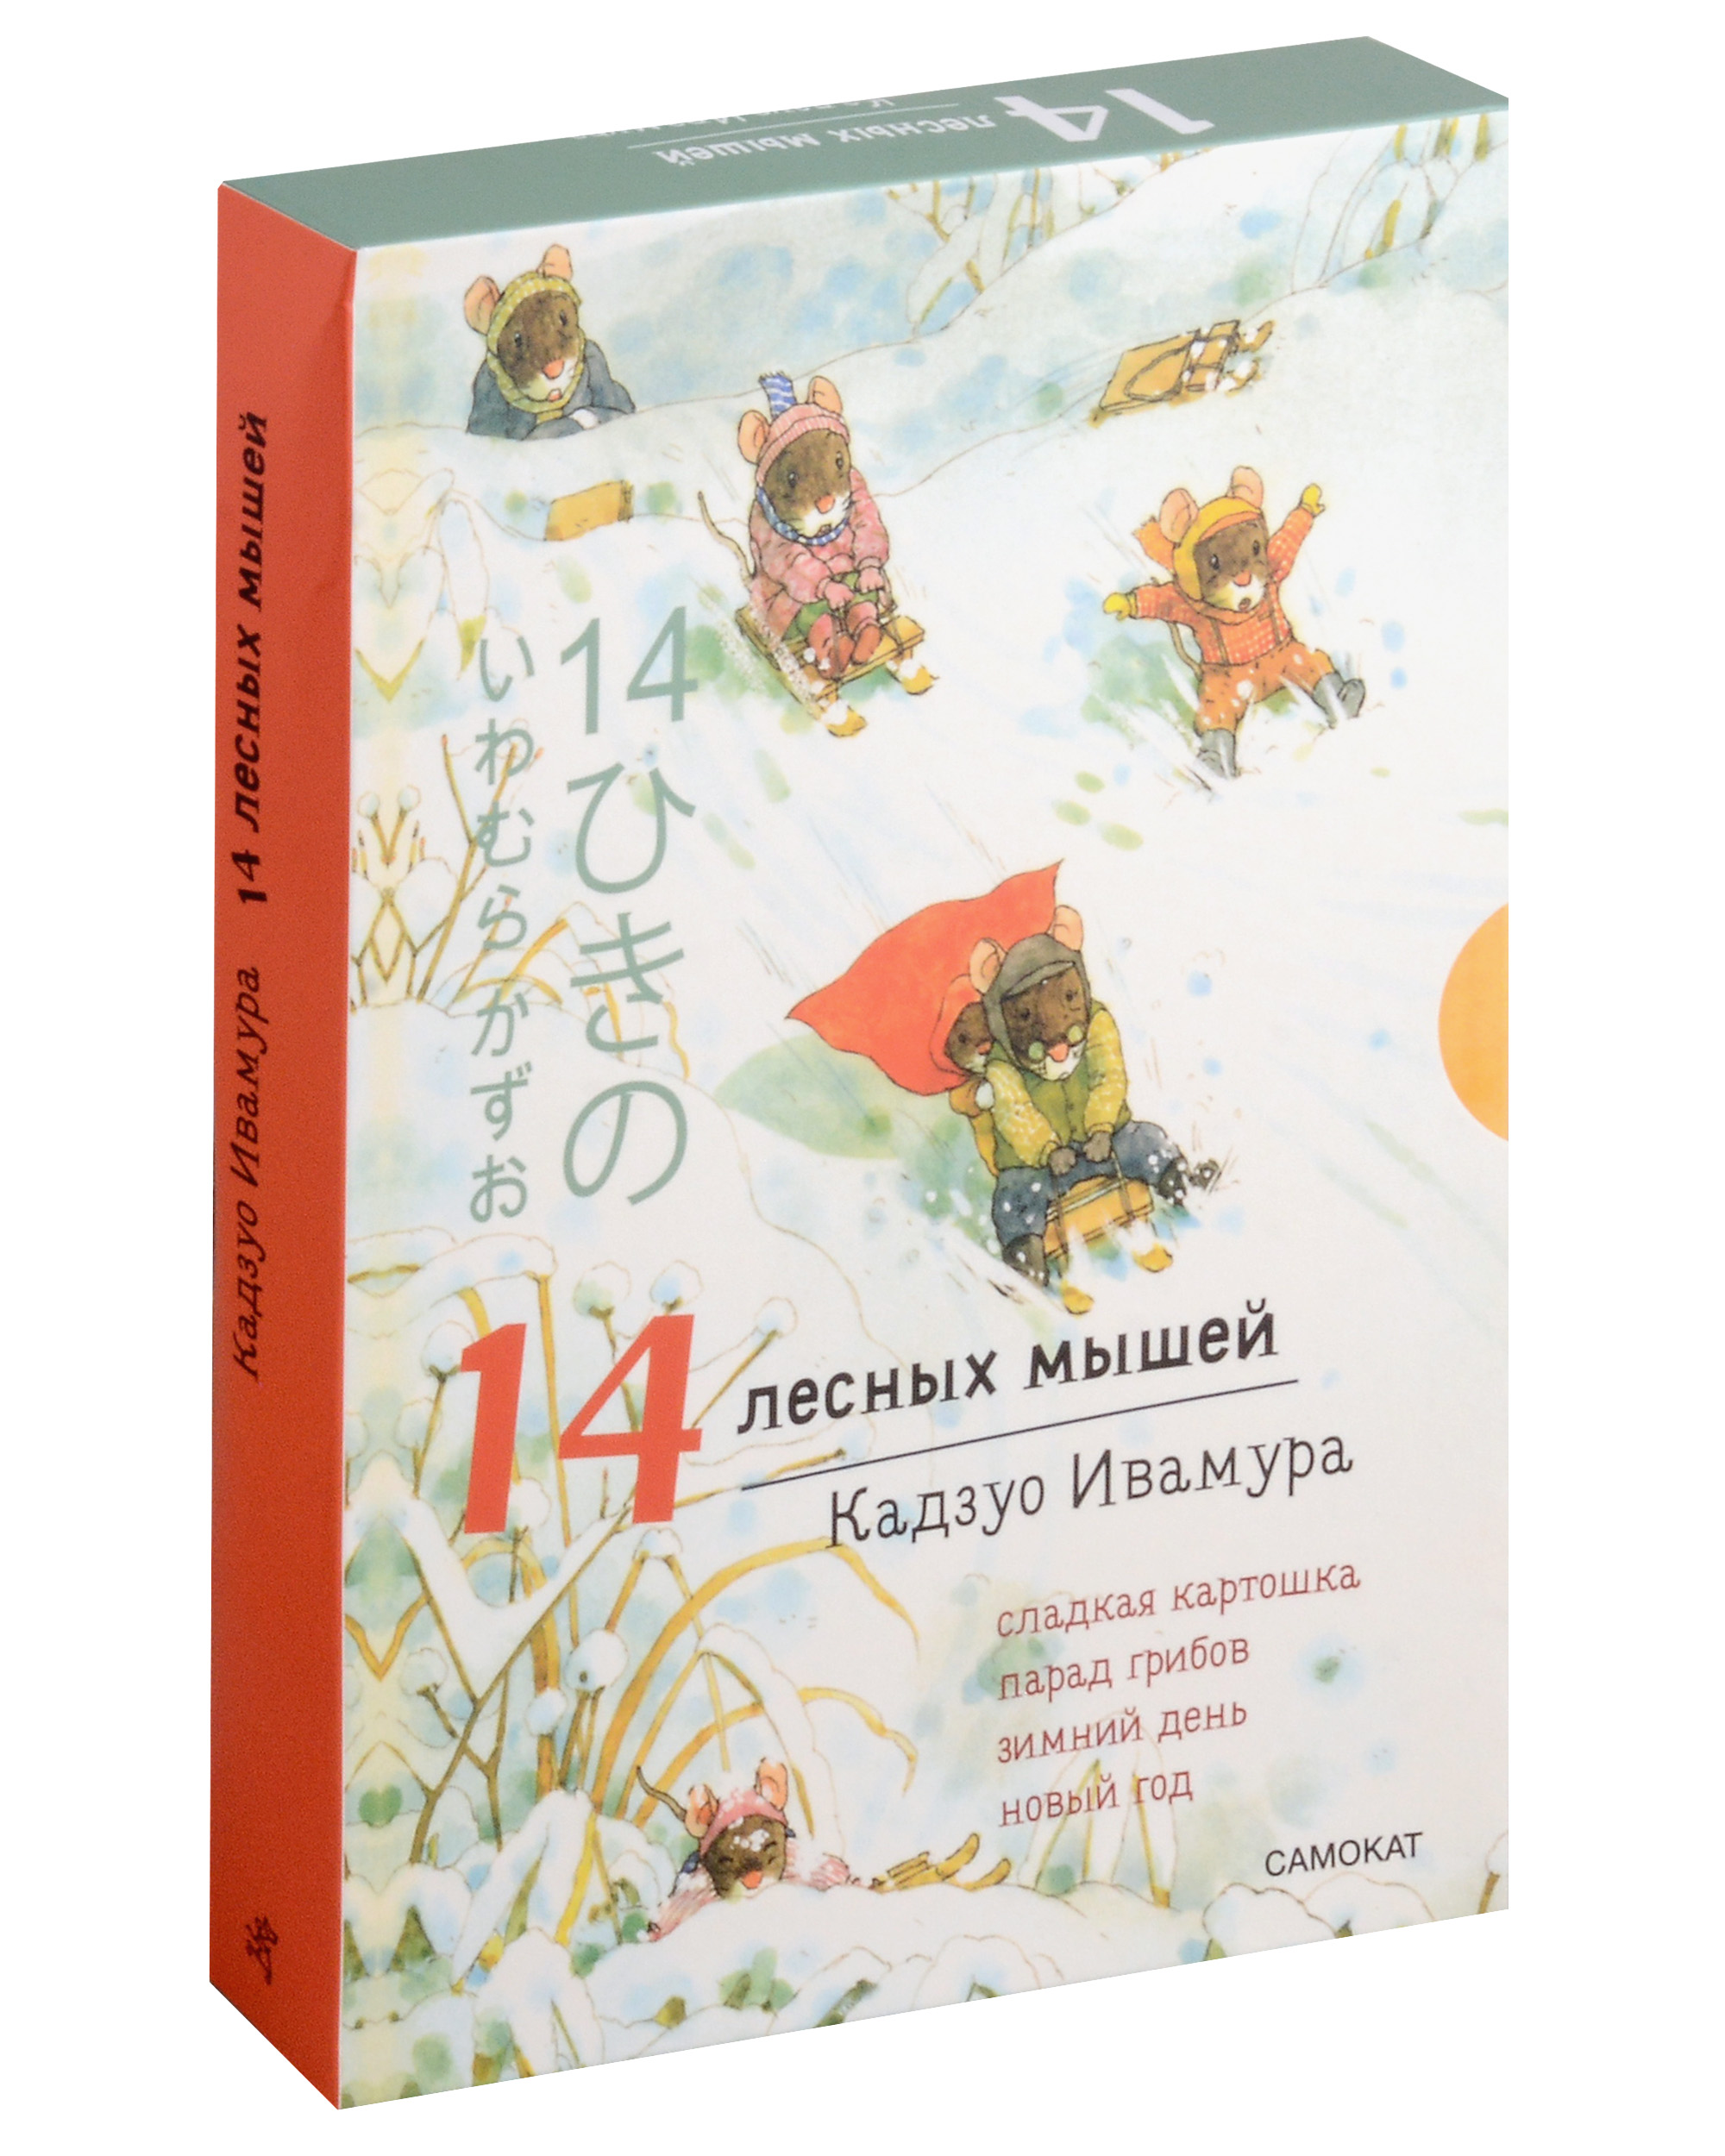 Ивамура Кадзуо 14 лесных мышей. Ужин с луной художественные книги издательский дом самокат книга 14 лесных мышей сладкая картошка